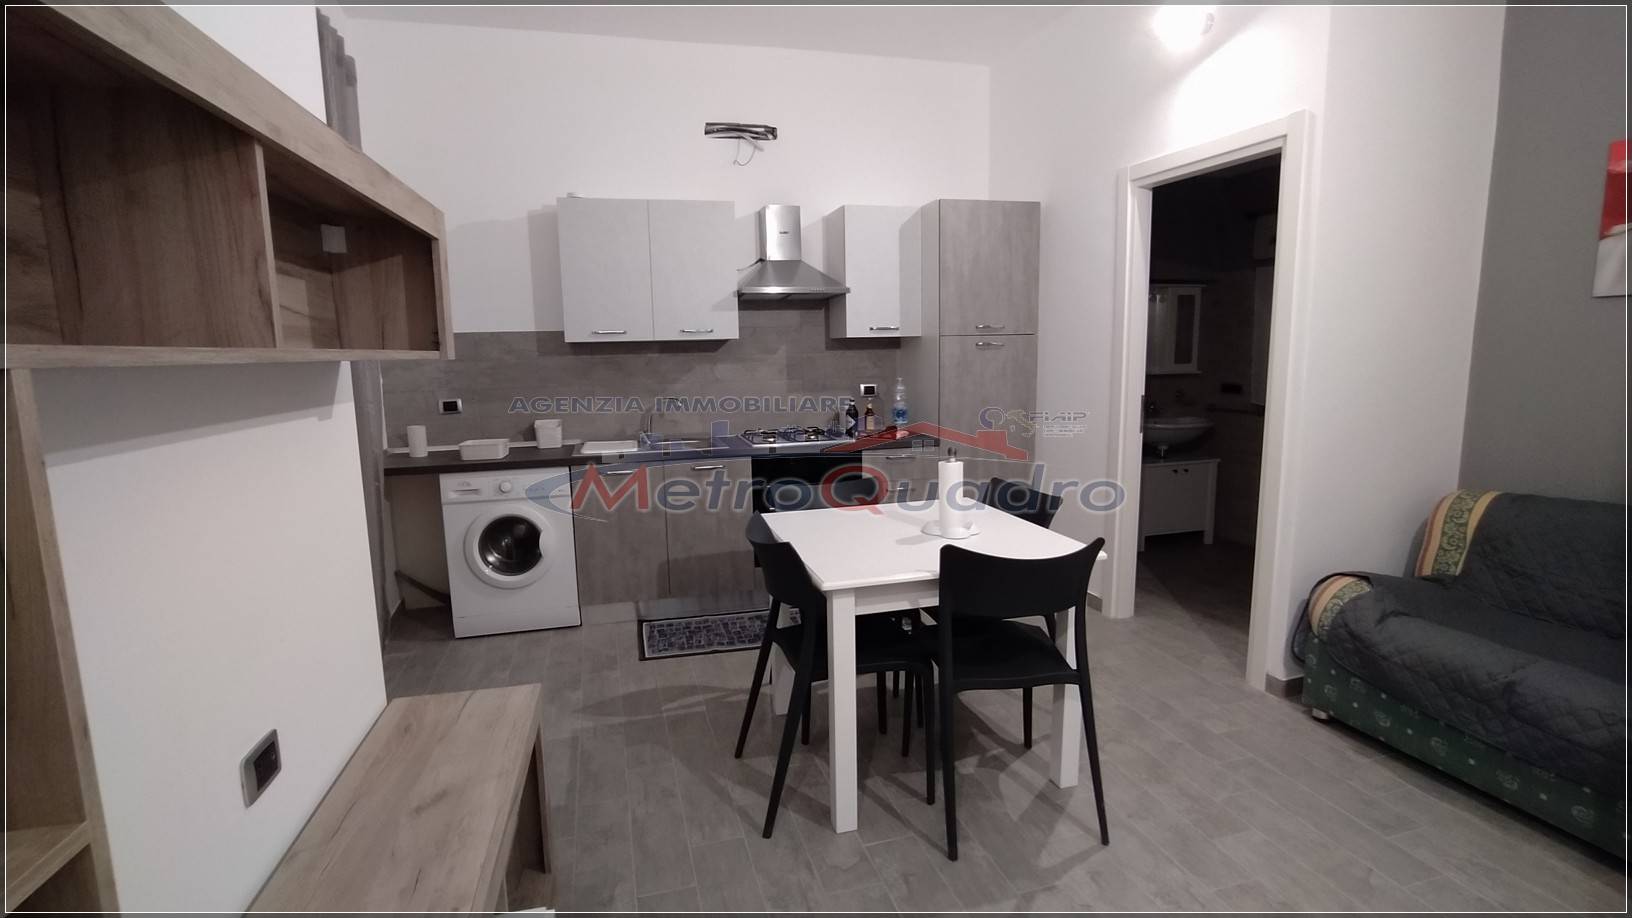 Appartamento in affitto a Canicattì, 1 locali, zona Località: C 3 ZONA VILLA COMUNALE, prezzo € 350 | CambioCasa.it